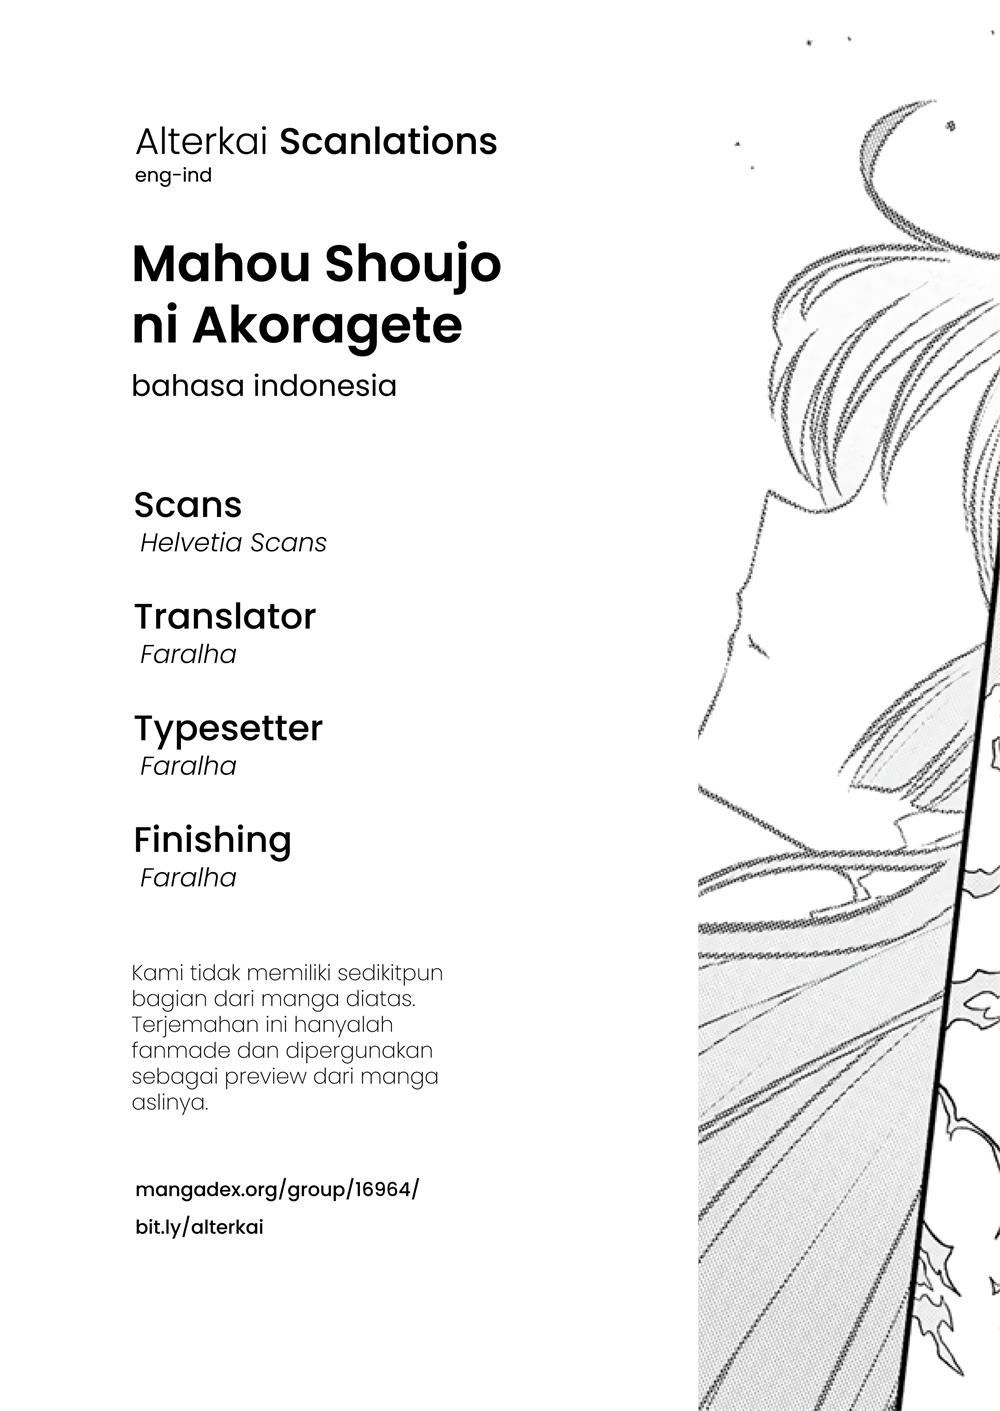 Mahou Shoujo ni Akogarete - MangaDex